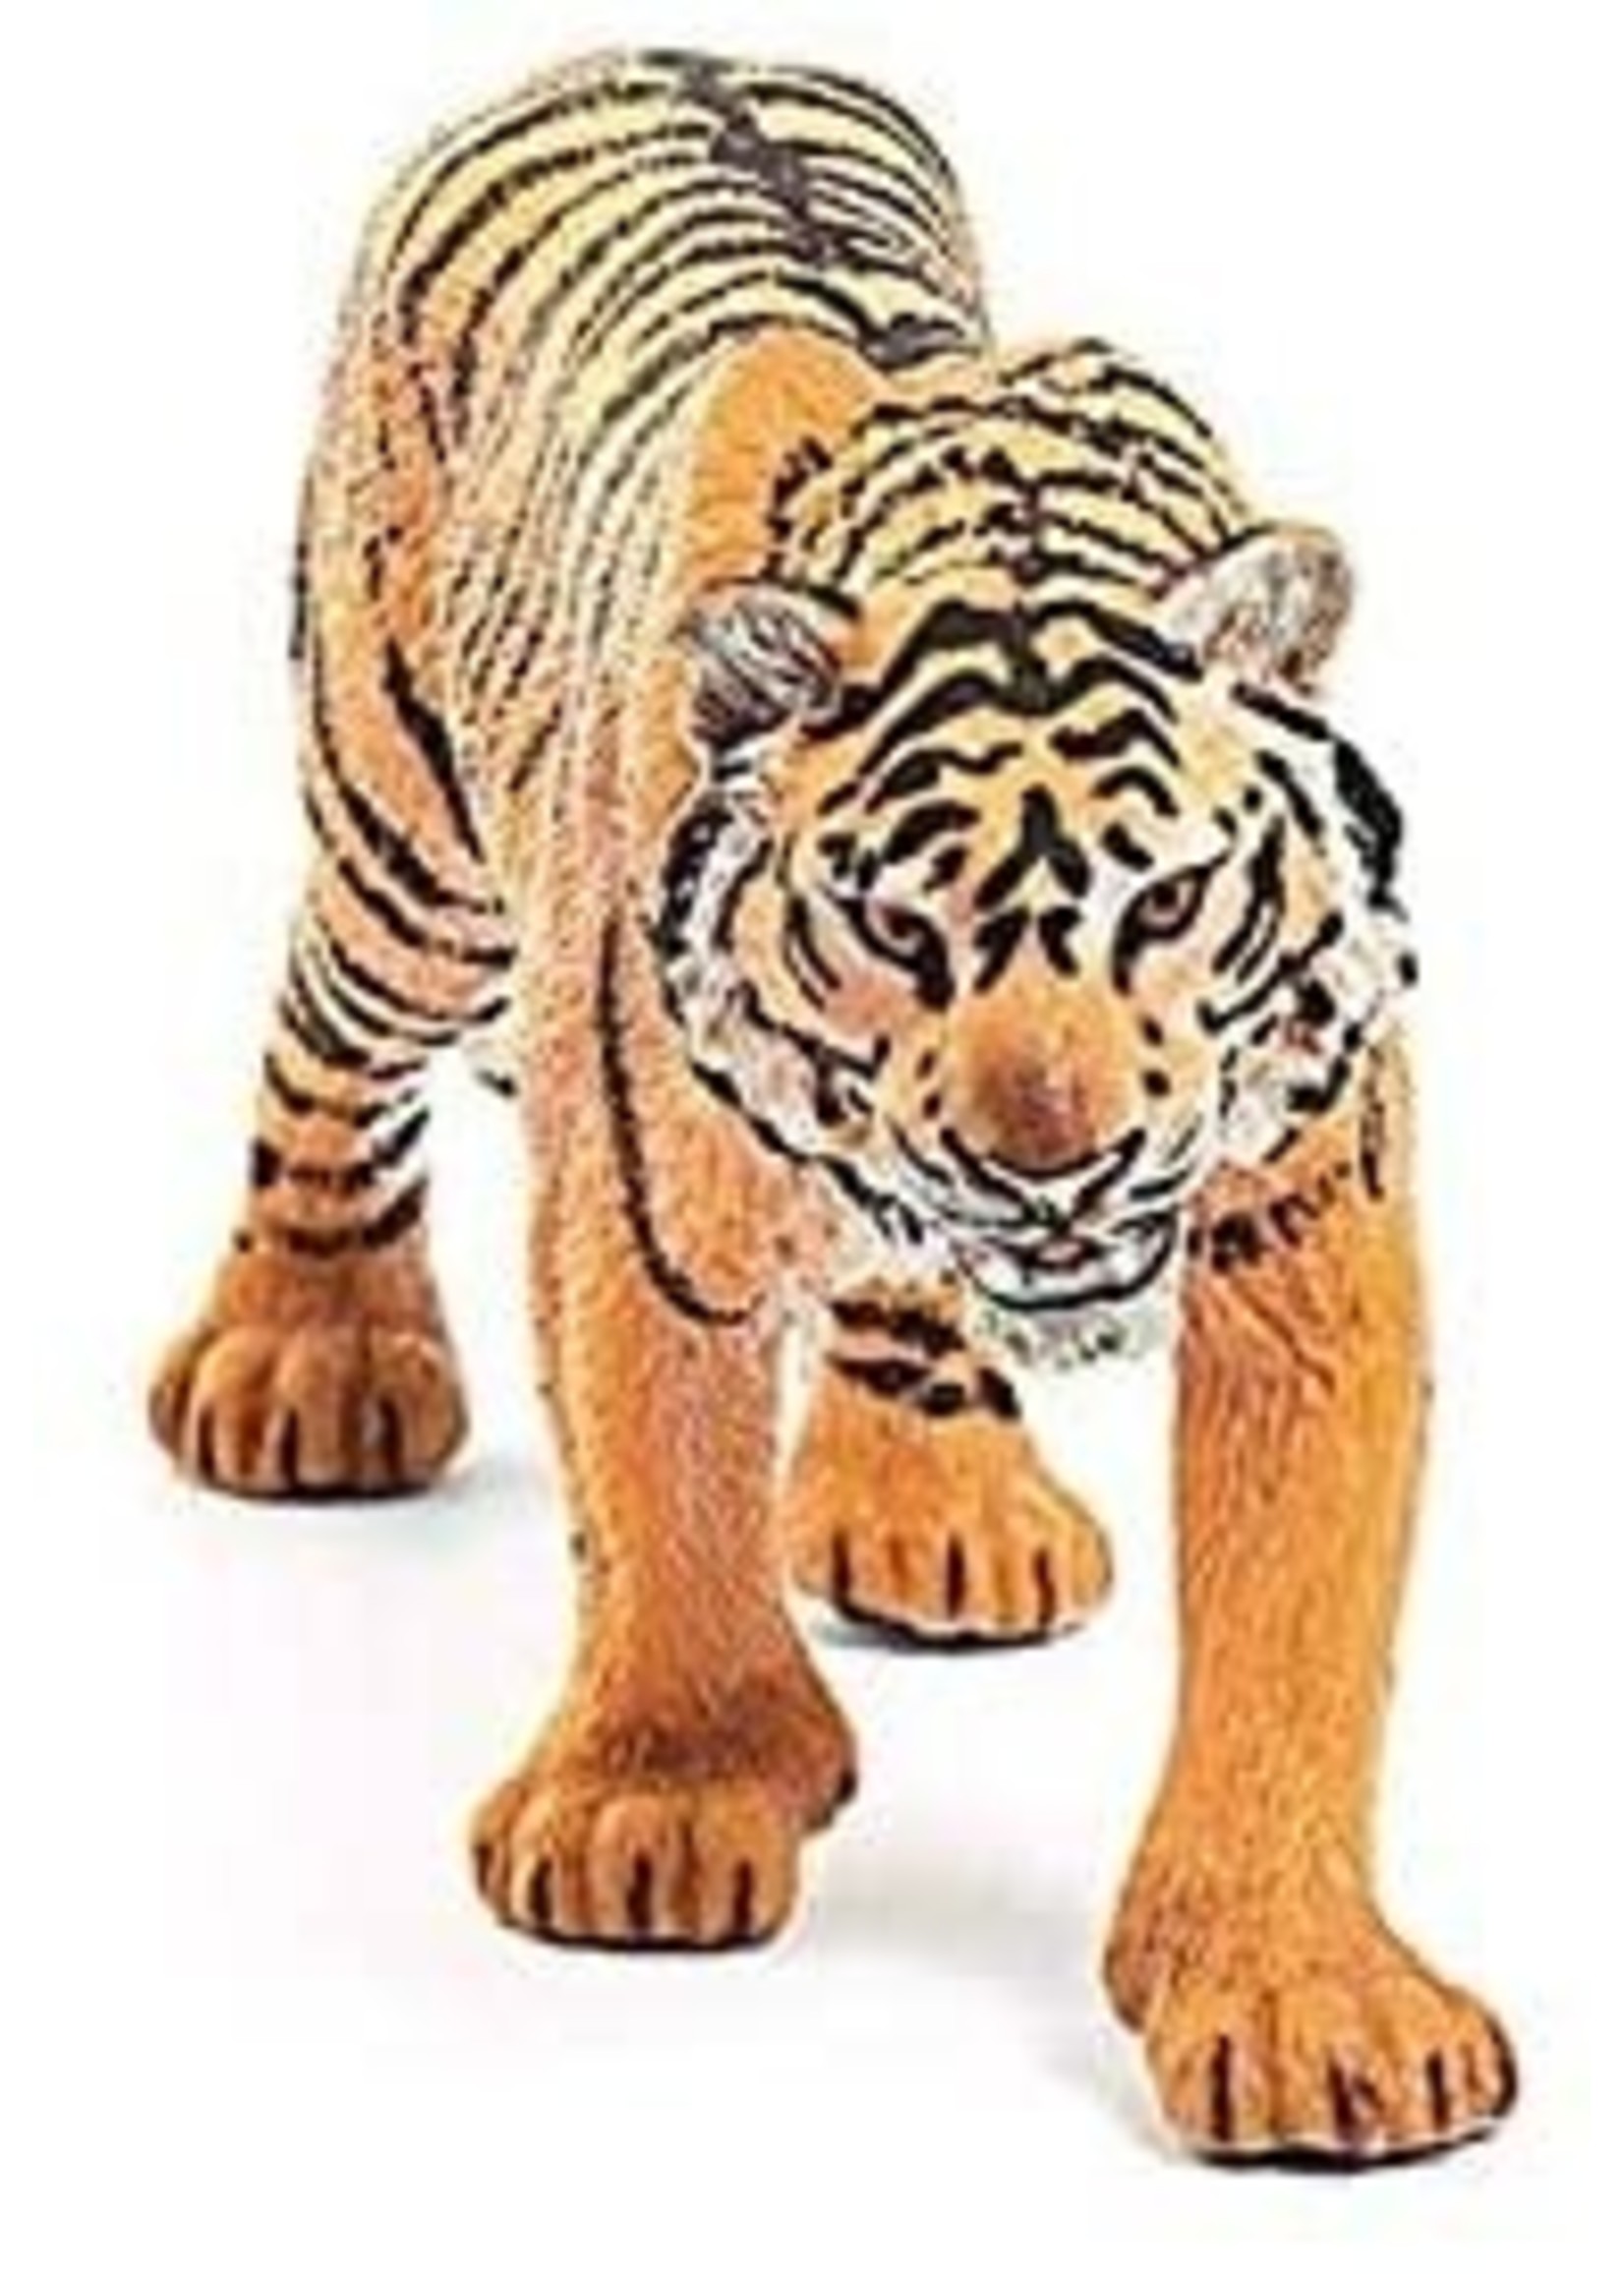 Schleich 14729 - Tiger